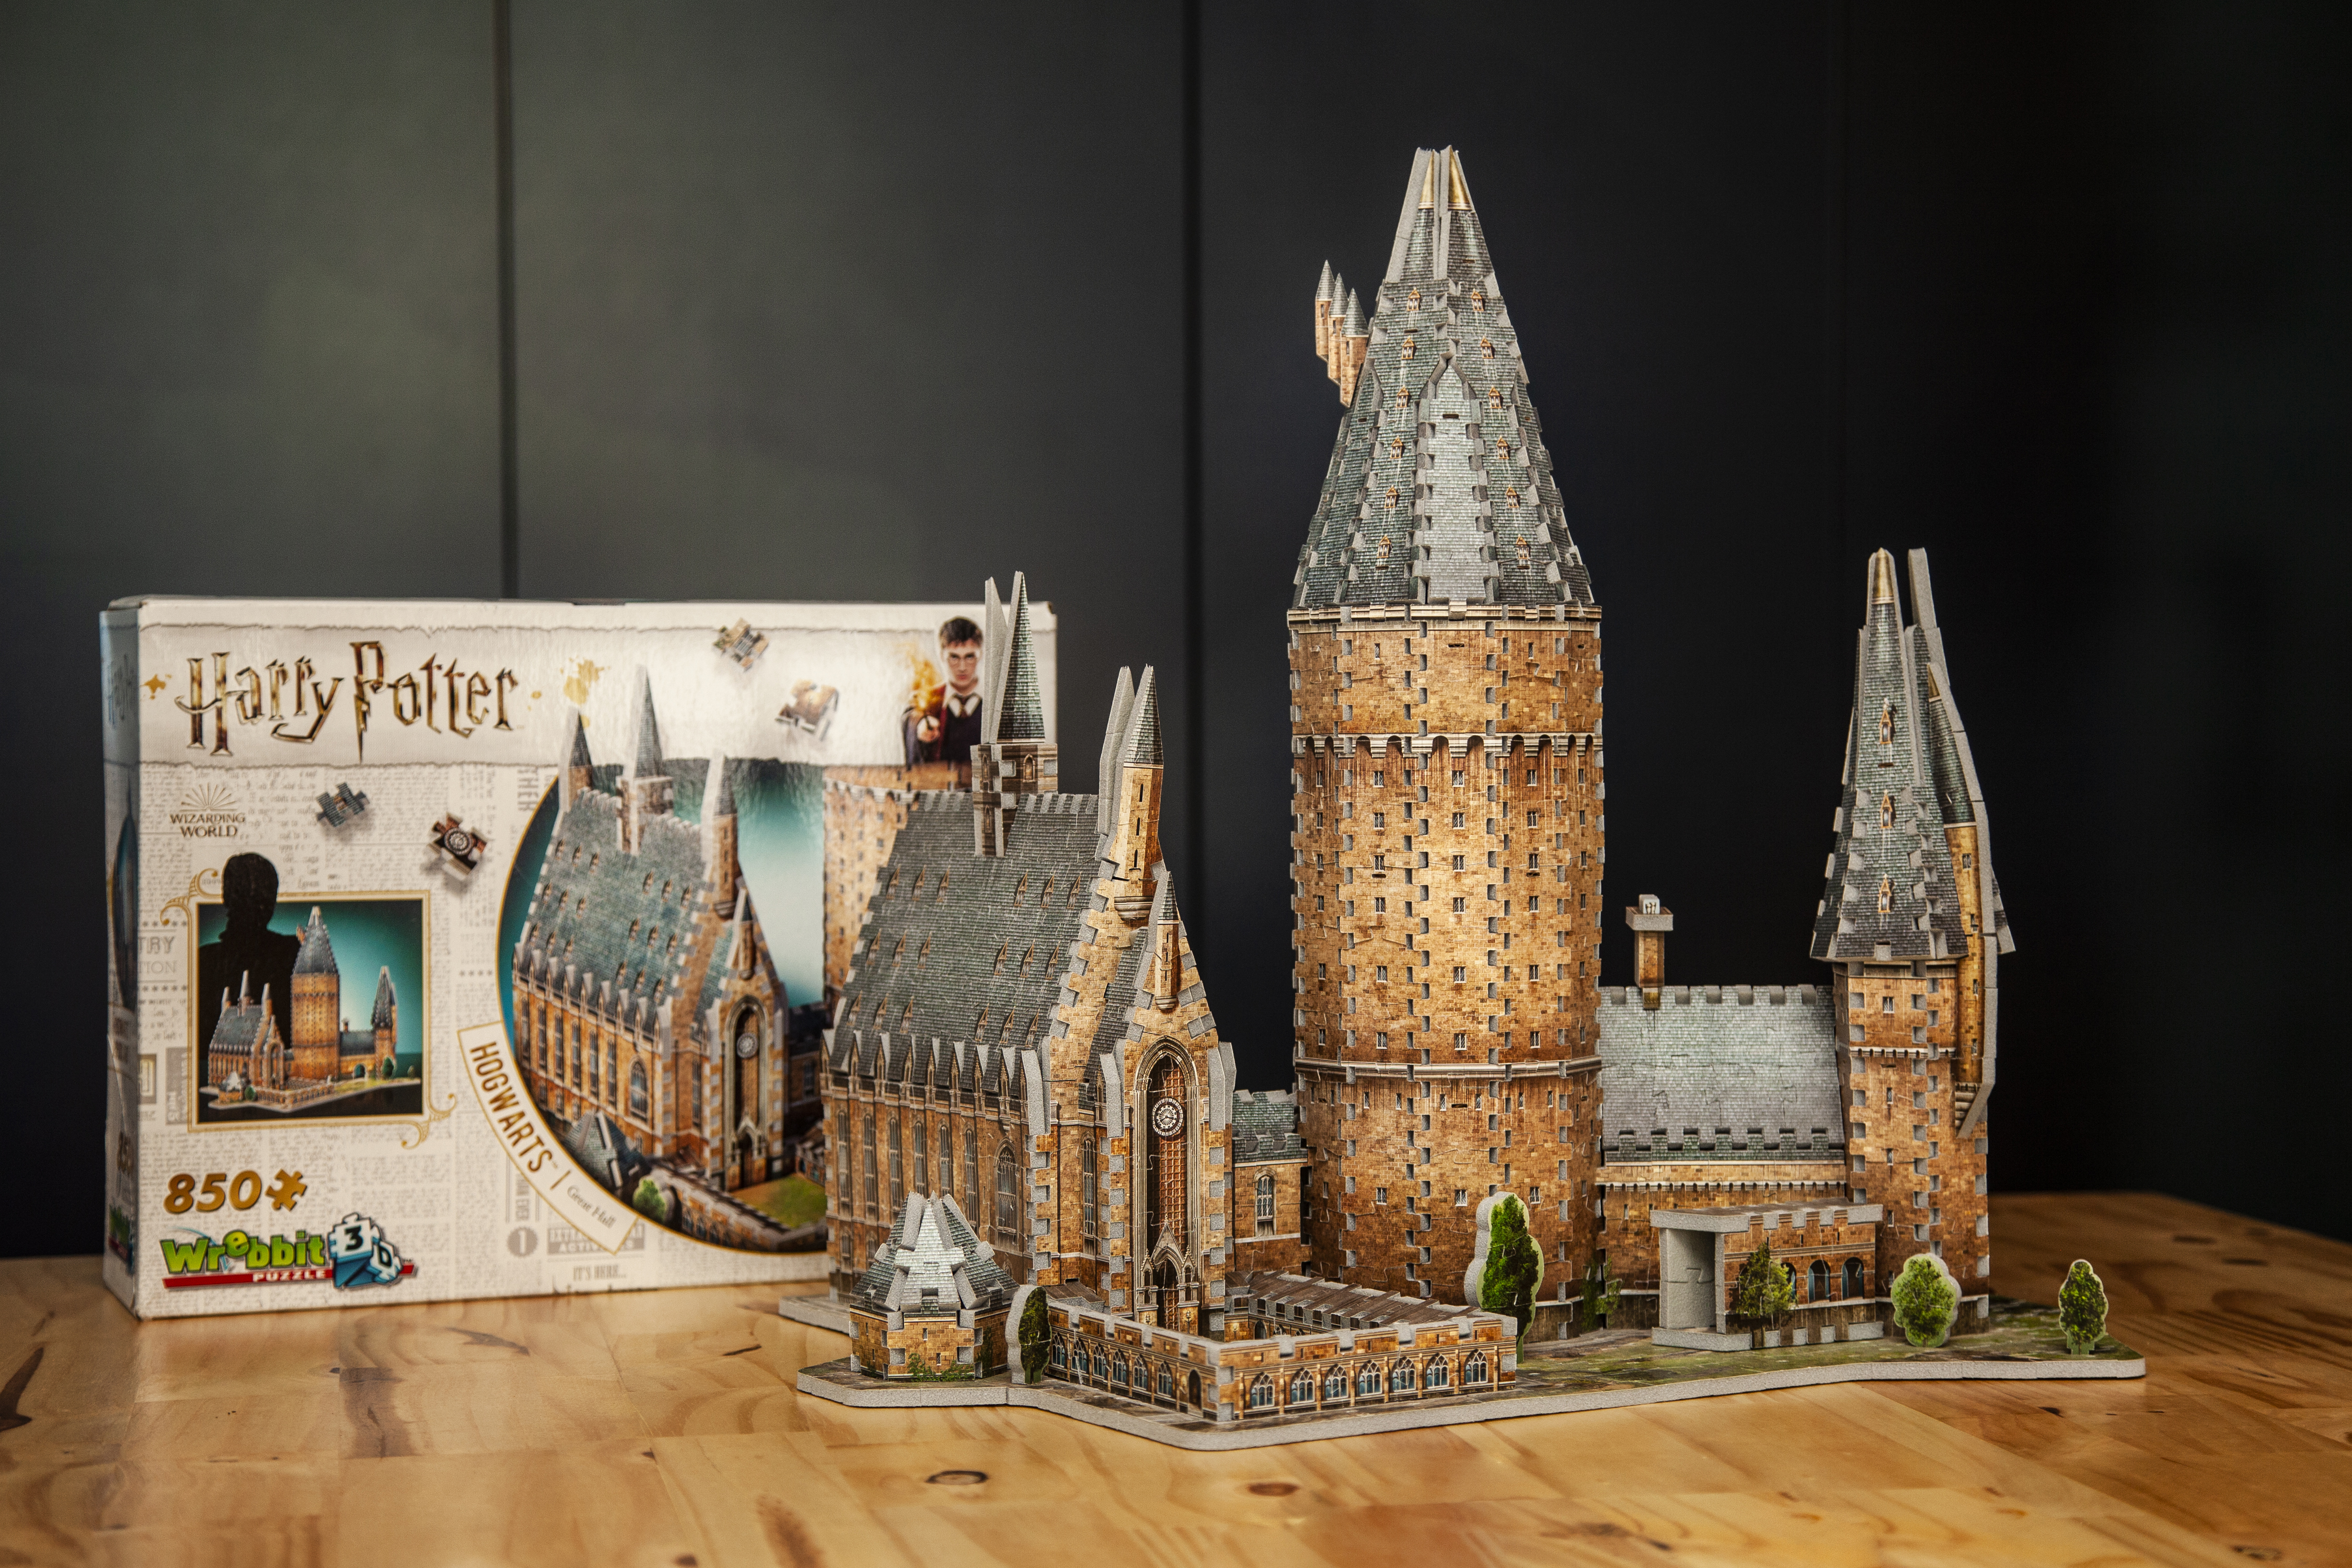 Quebra-Cabeça de Madeira 3D - Castelo - Harry Potter